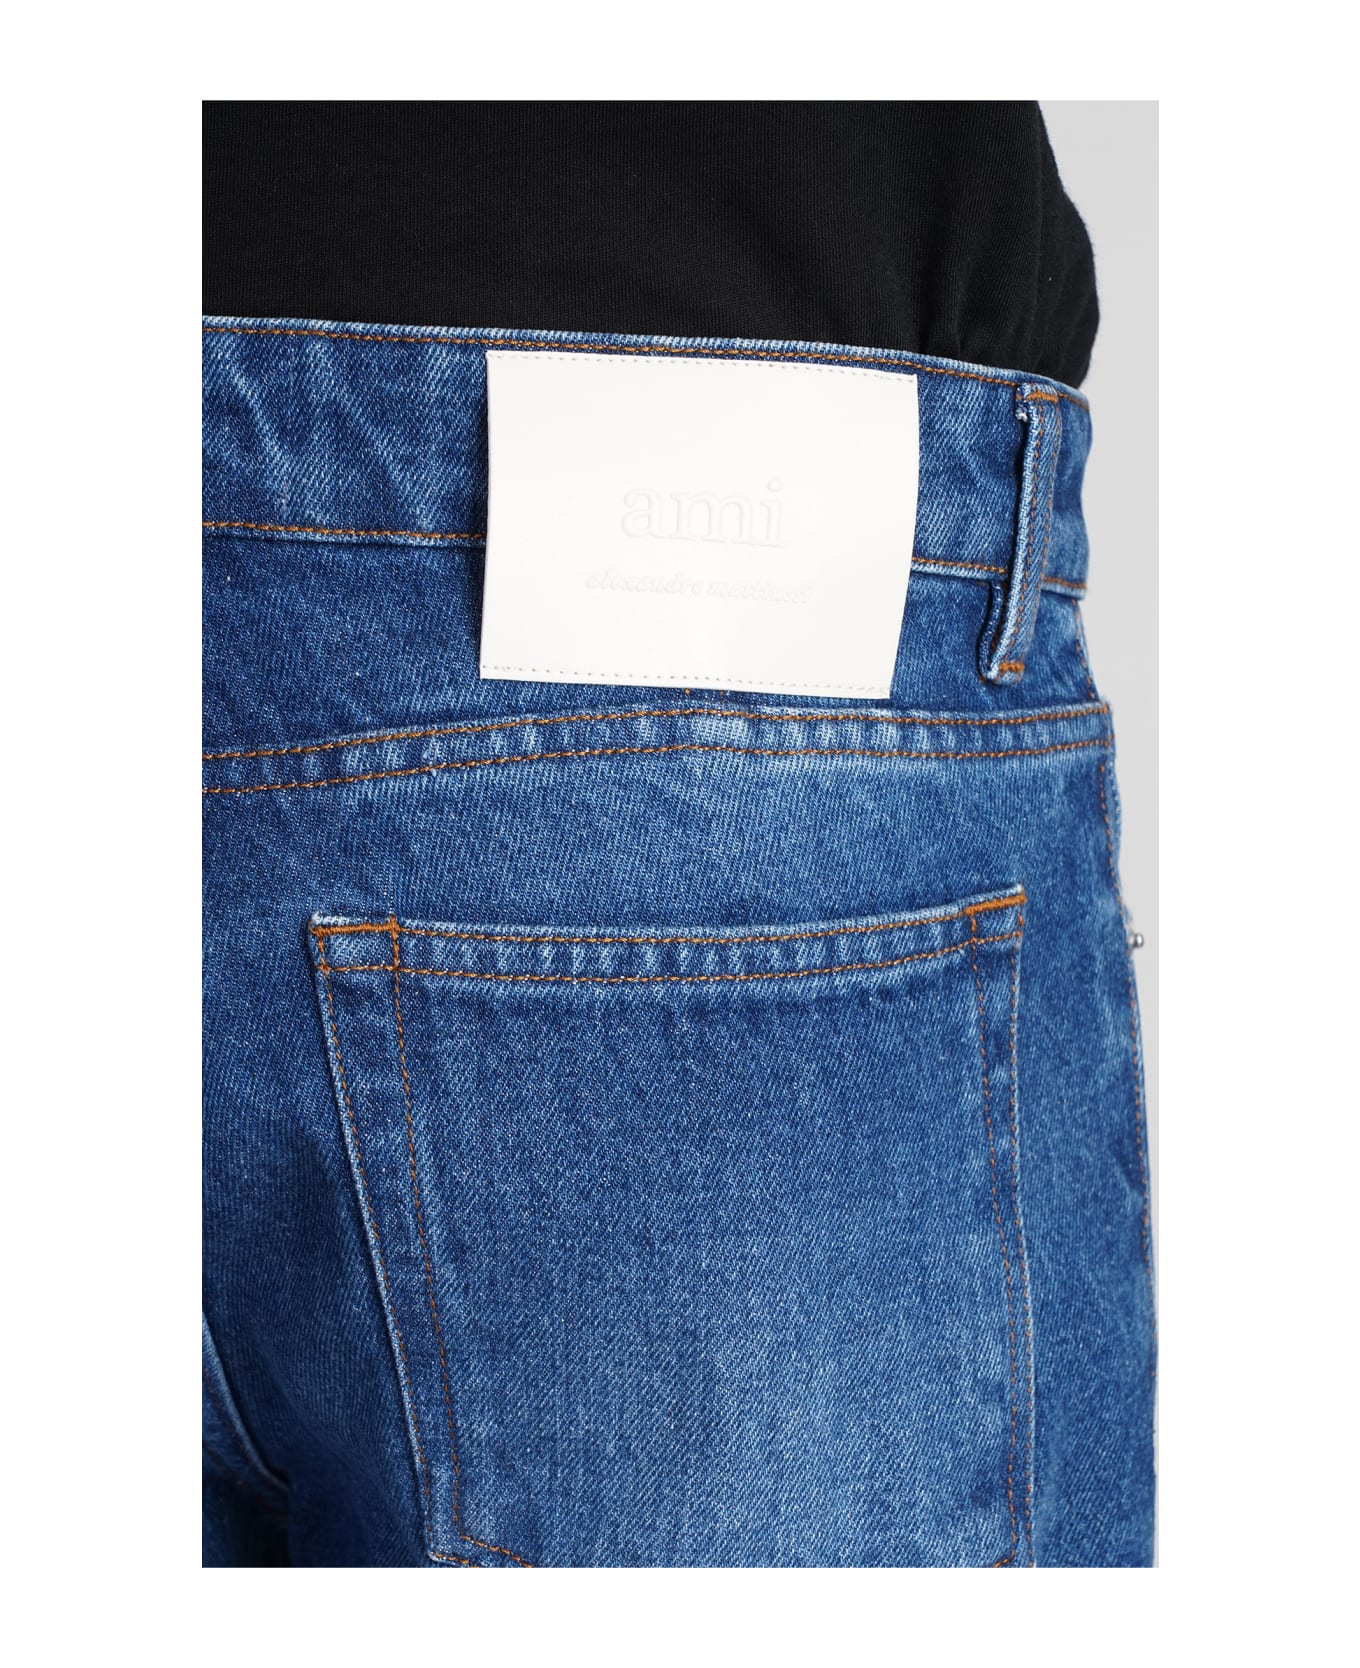 Ami Alexandre Mattiussi Jeans In Blue Cotton - blue デニム